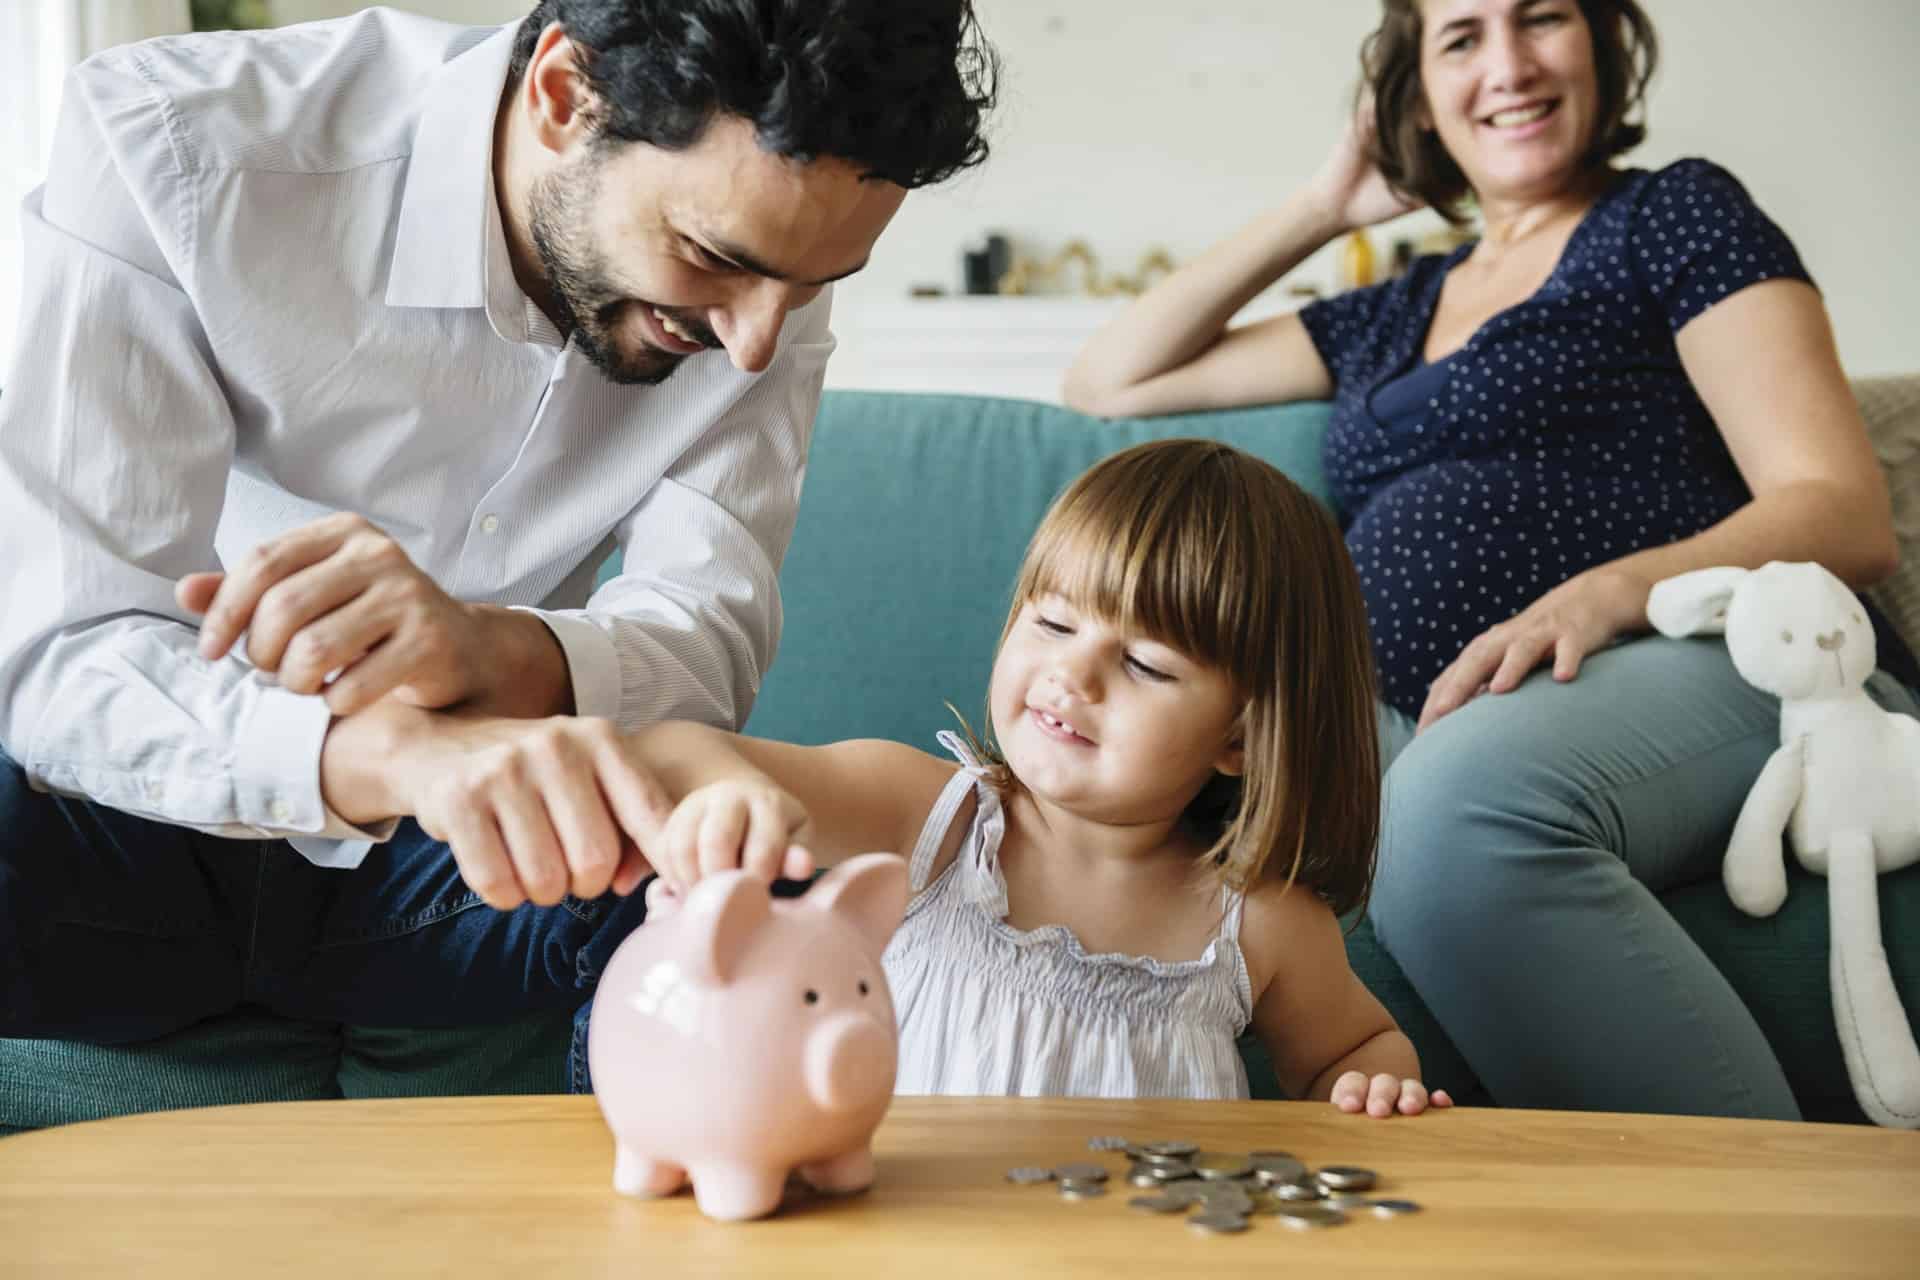 Leer je kind van jongs af omgaan met geld op een speelse manier